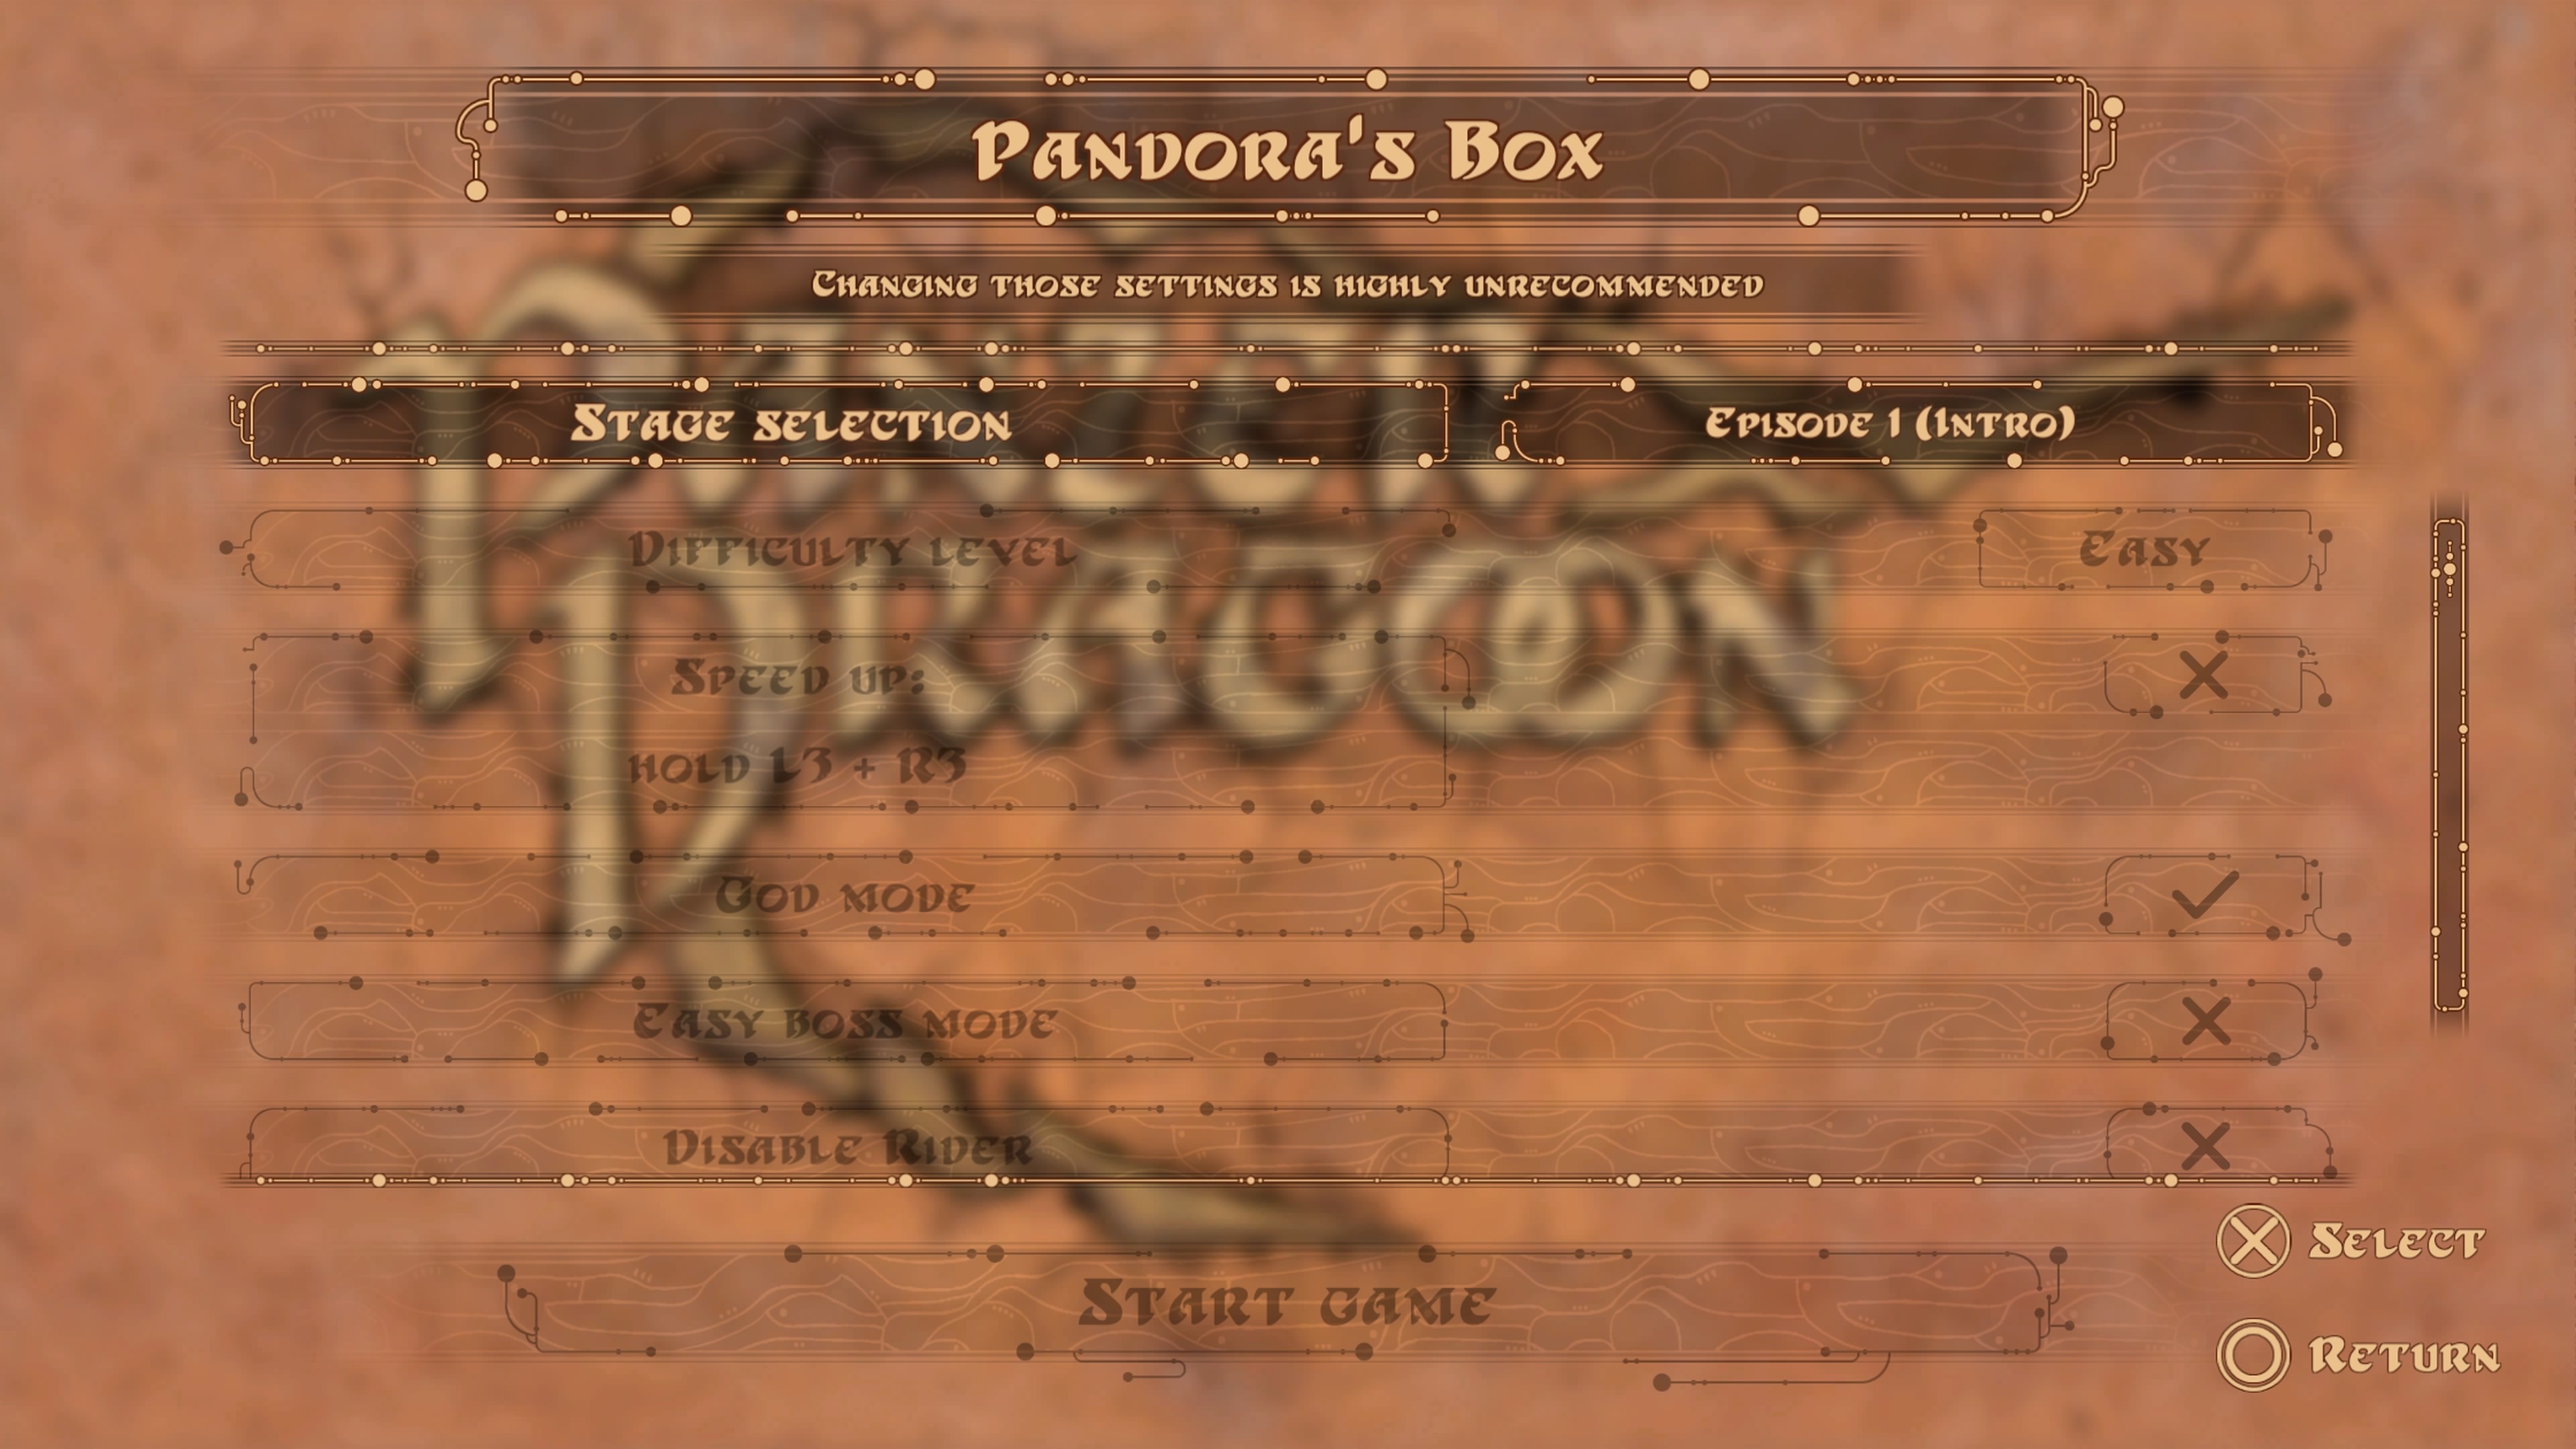 Pandora's Box makes the game more configurable.